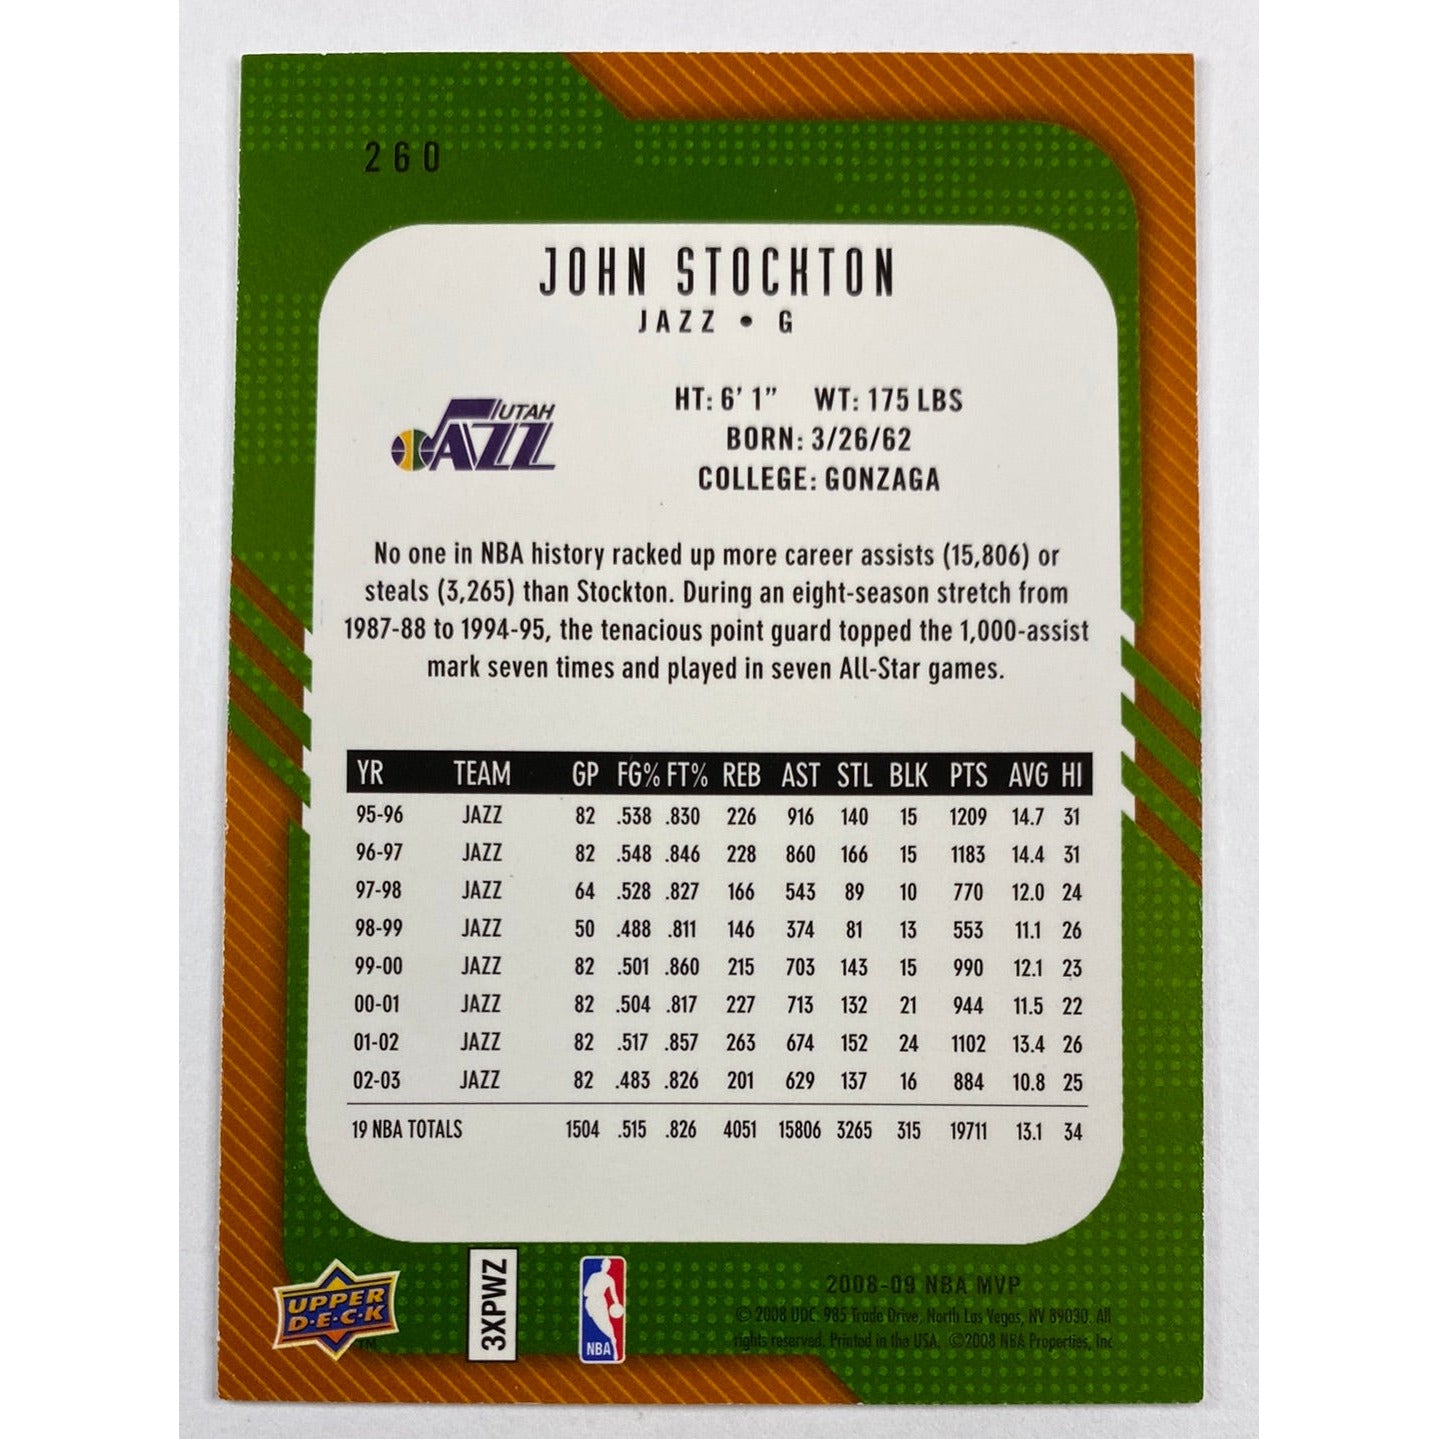 2008-09 MVP John Stockton MVP Legends